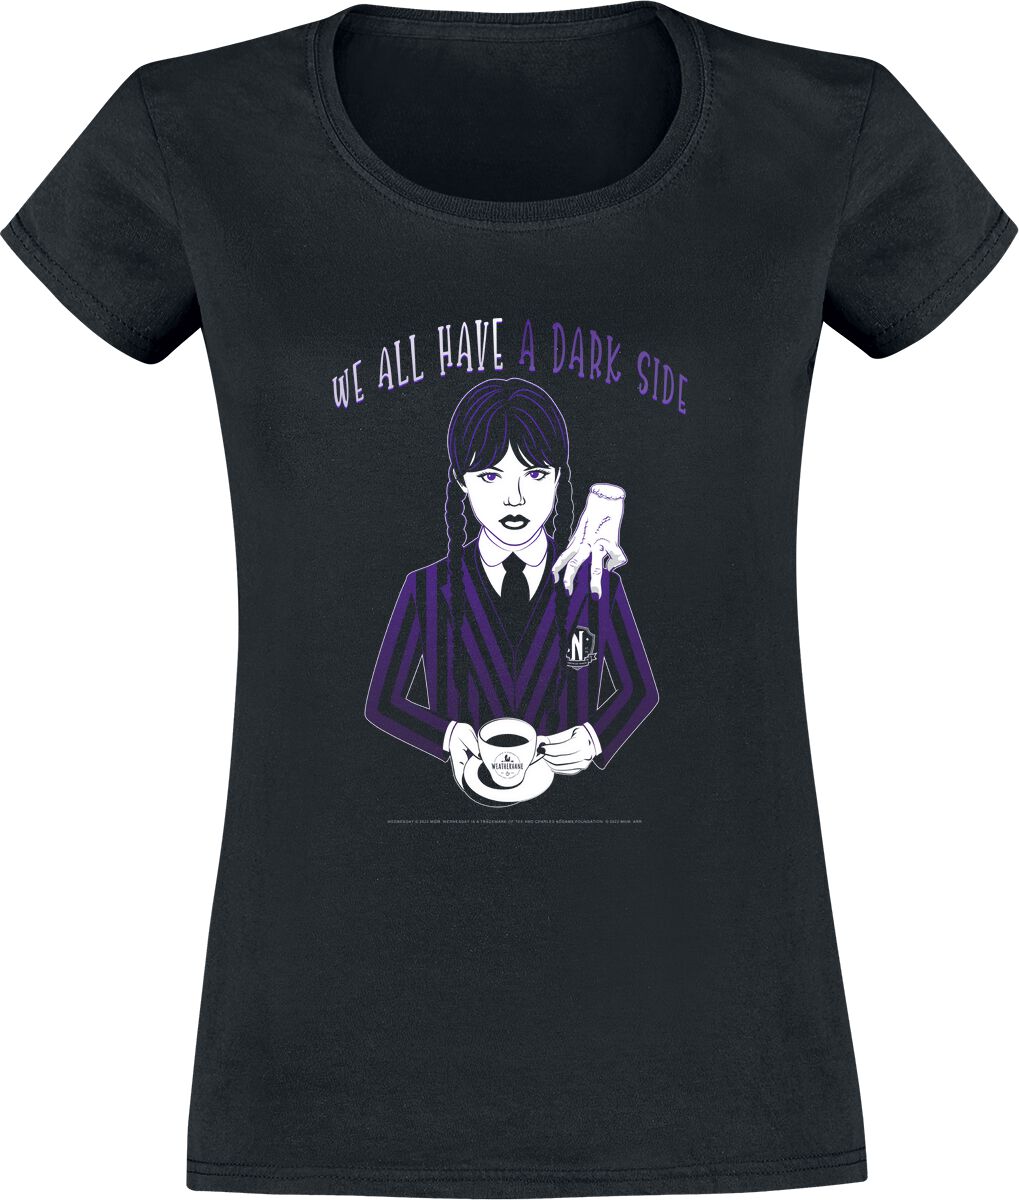 T-Shirt Manches courtes de Wednesday - We All Have A Dark Side - S à XXL - pour Femme - noir